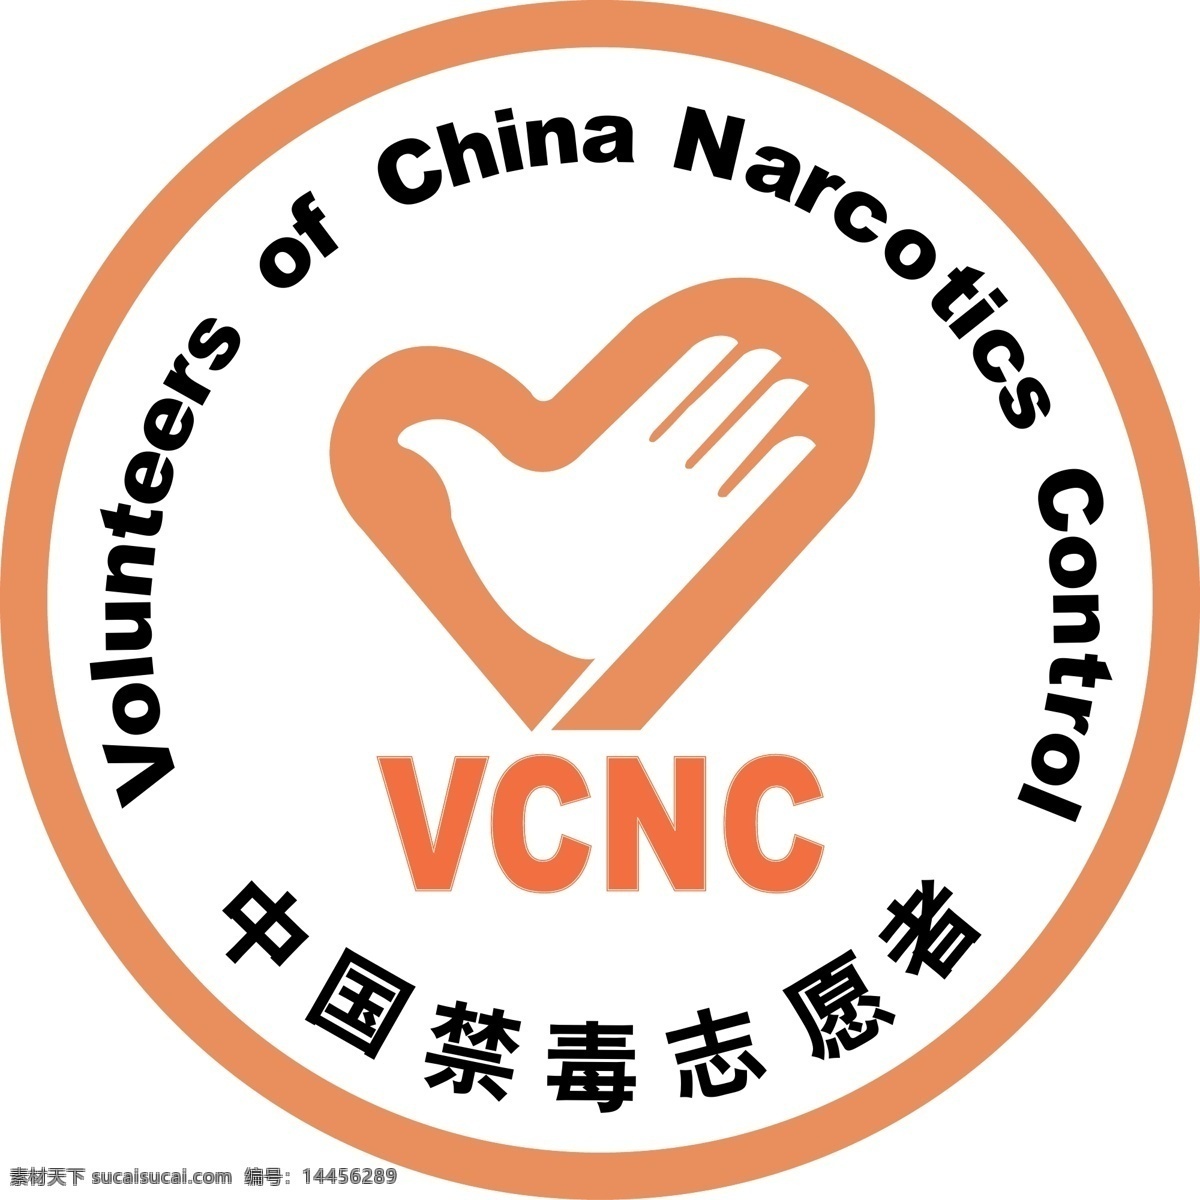 志愿者 中国 禁毒 公共标识标志 标识标志图标 矢量